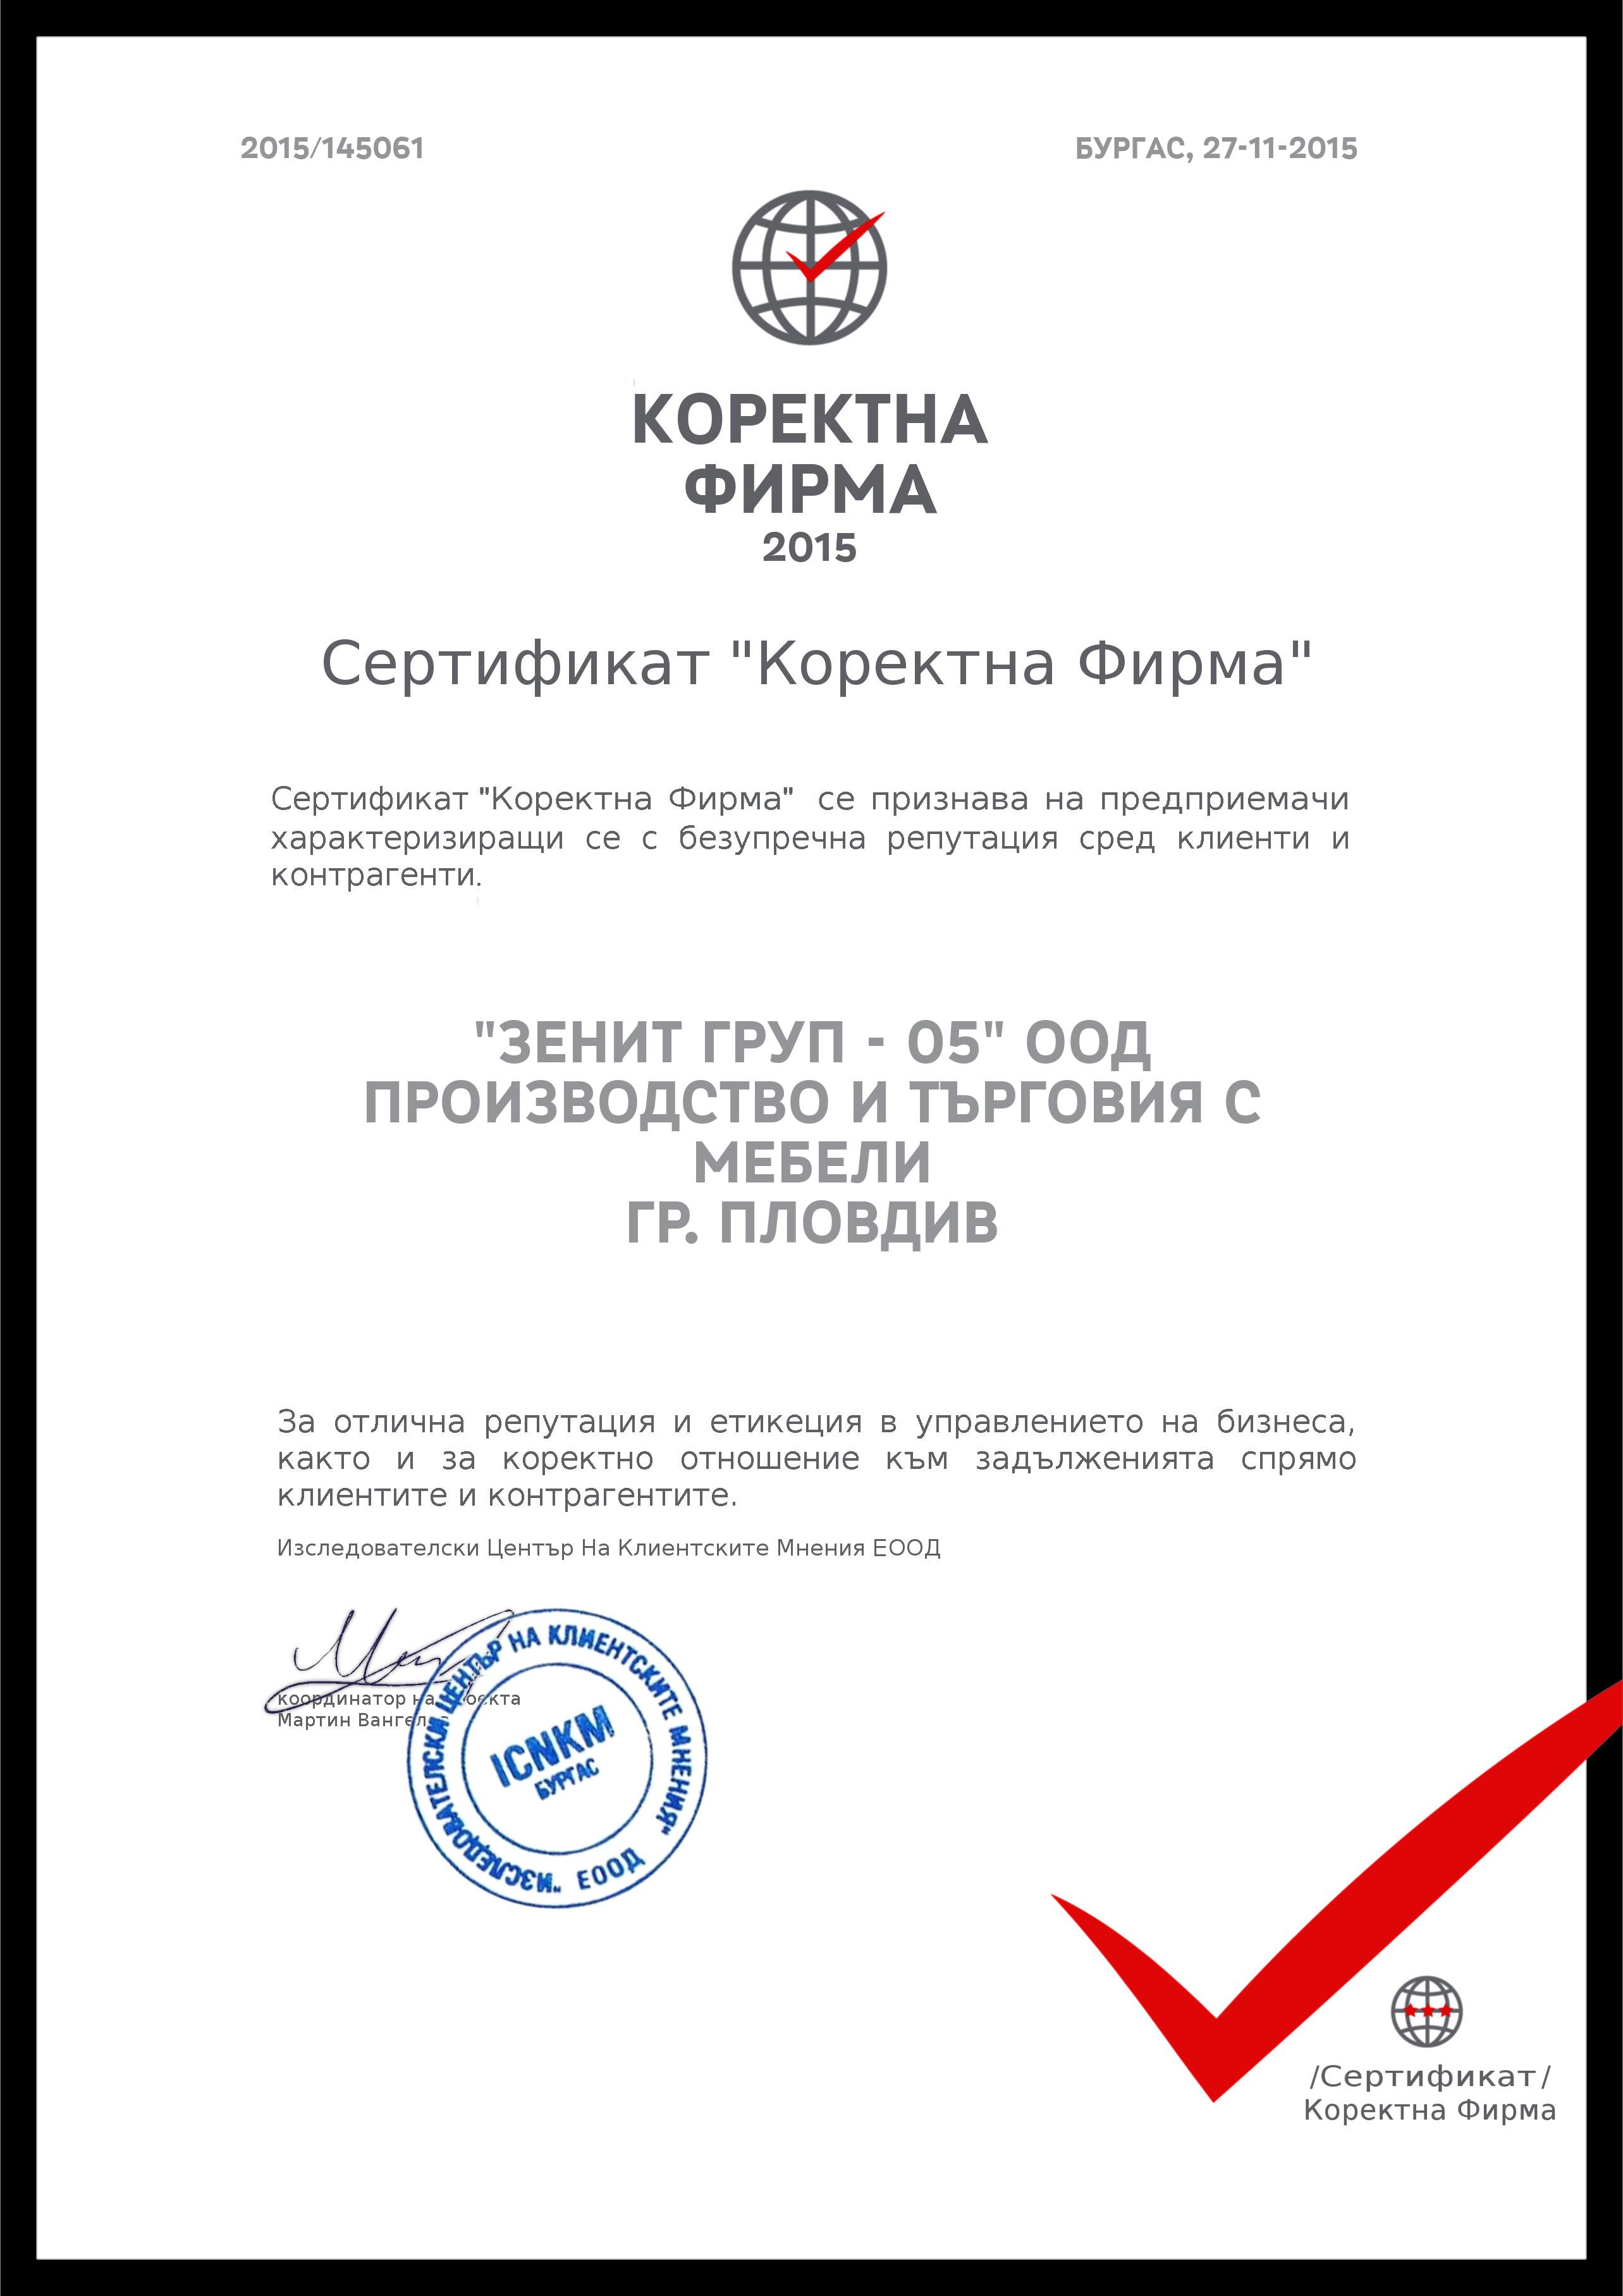 Сертификат Коректна фирма